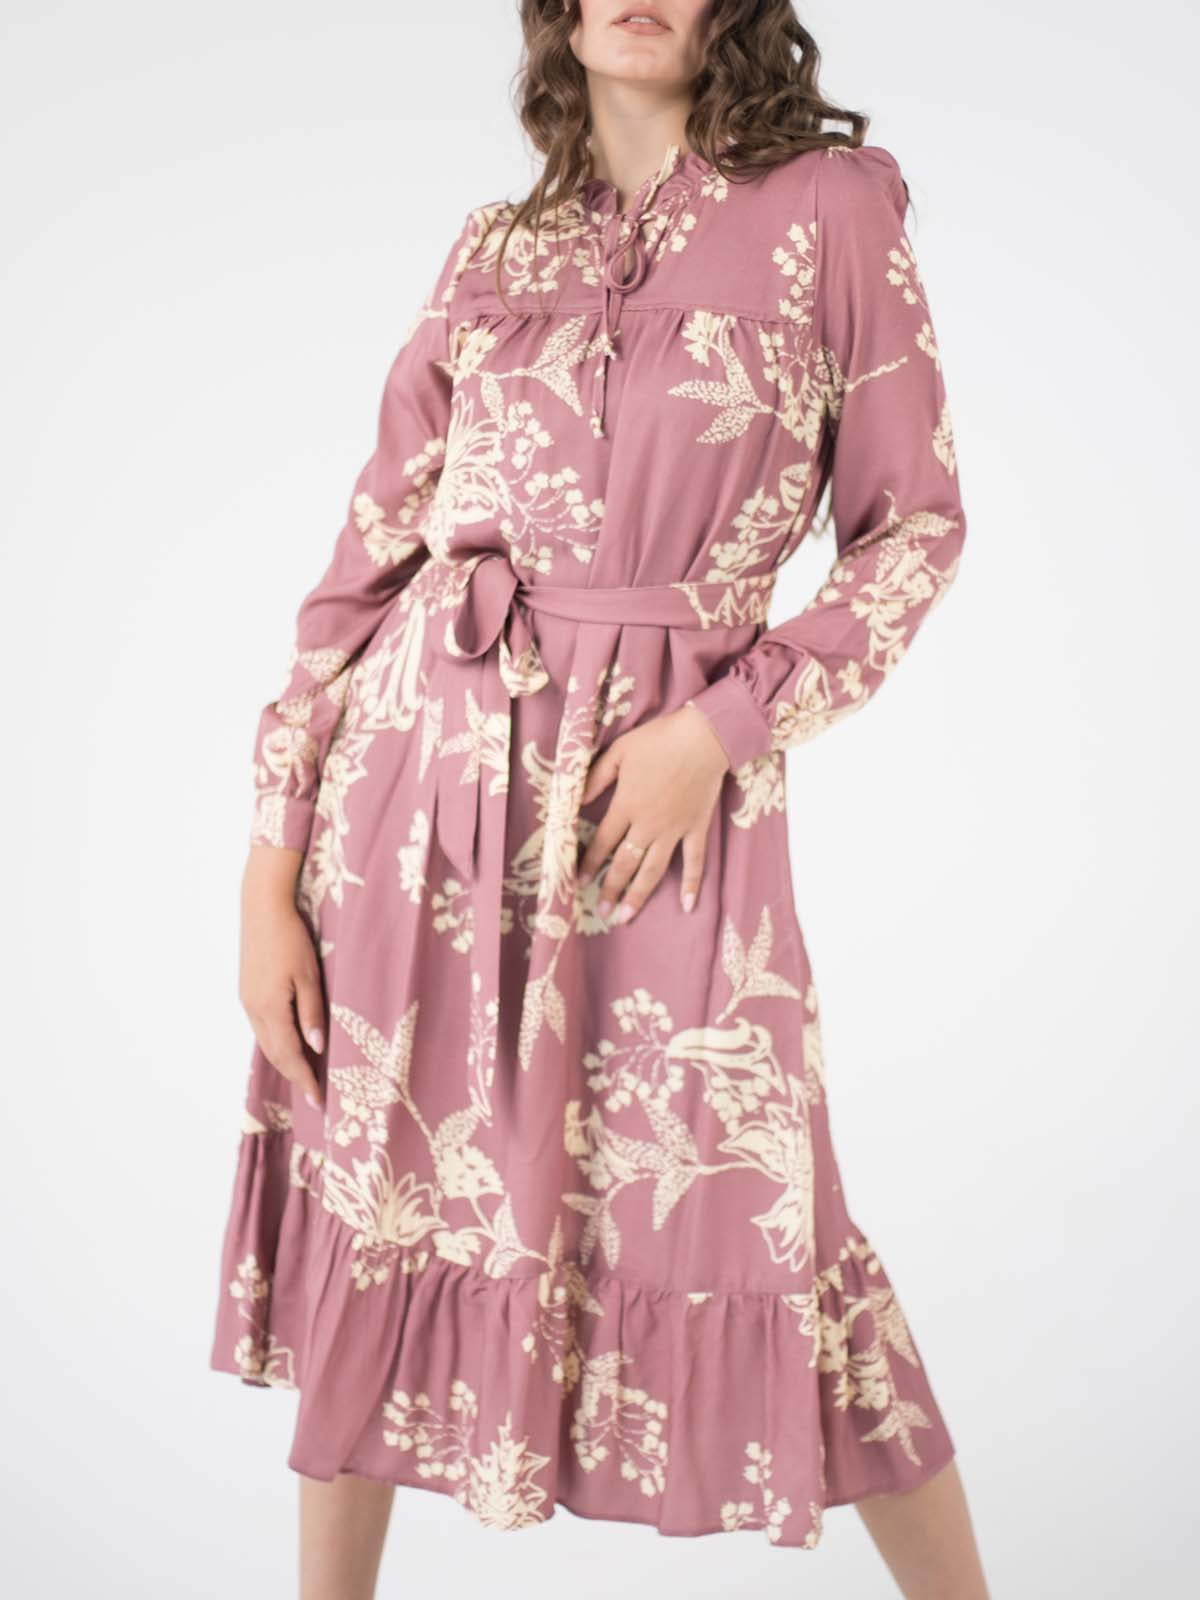 Платье А-силуэта пудрового цвета в цветочный принт | 5907995